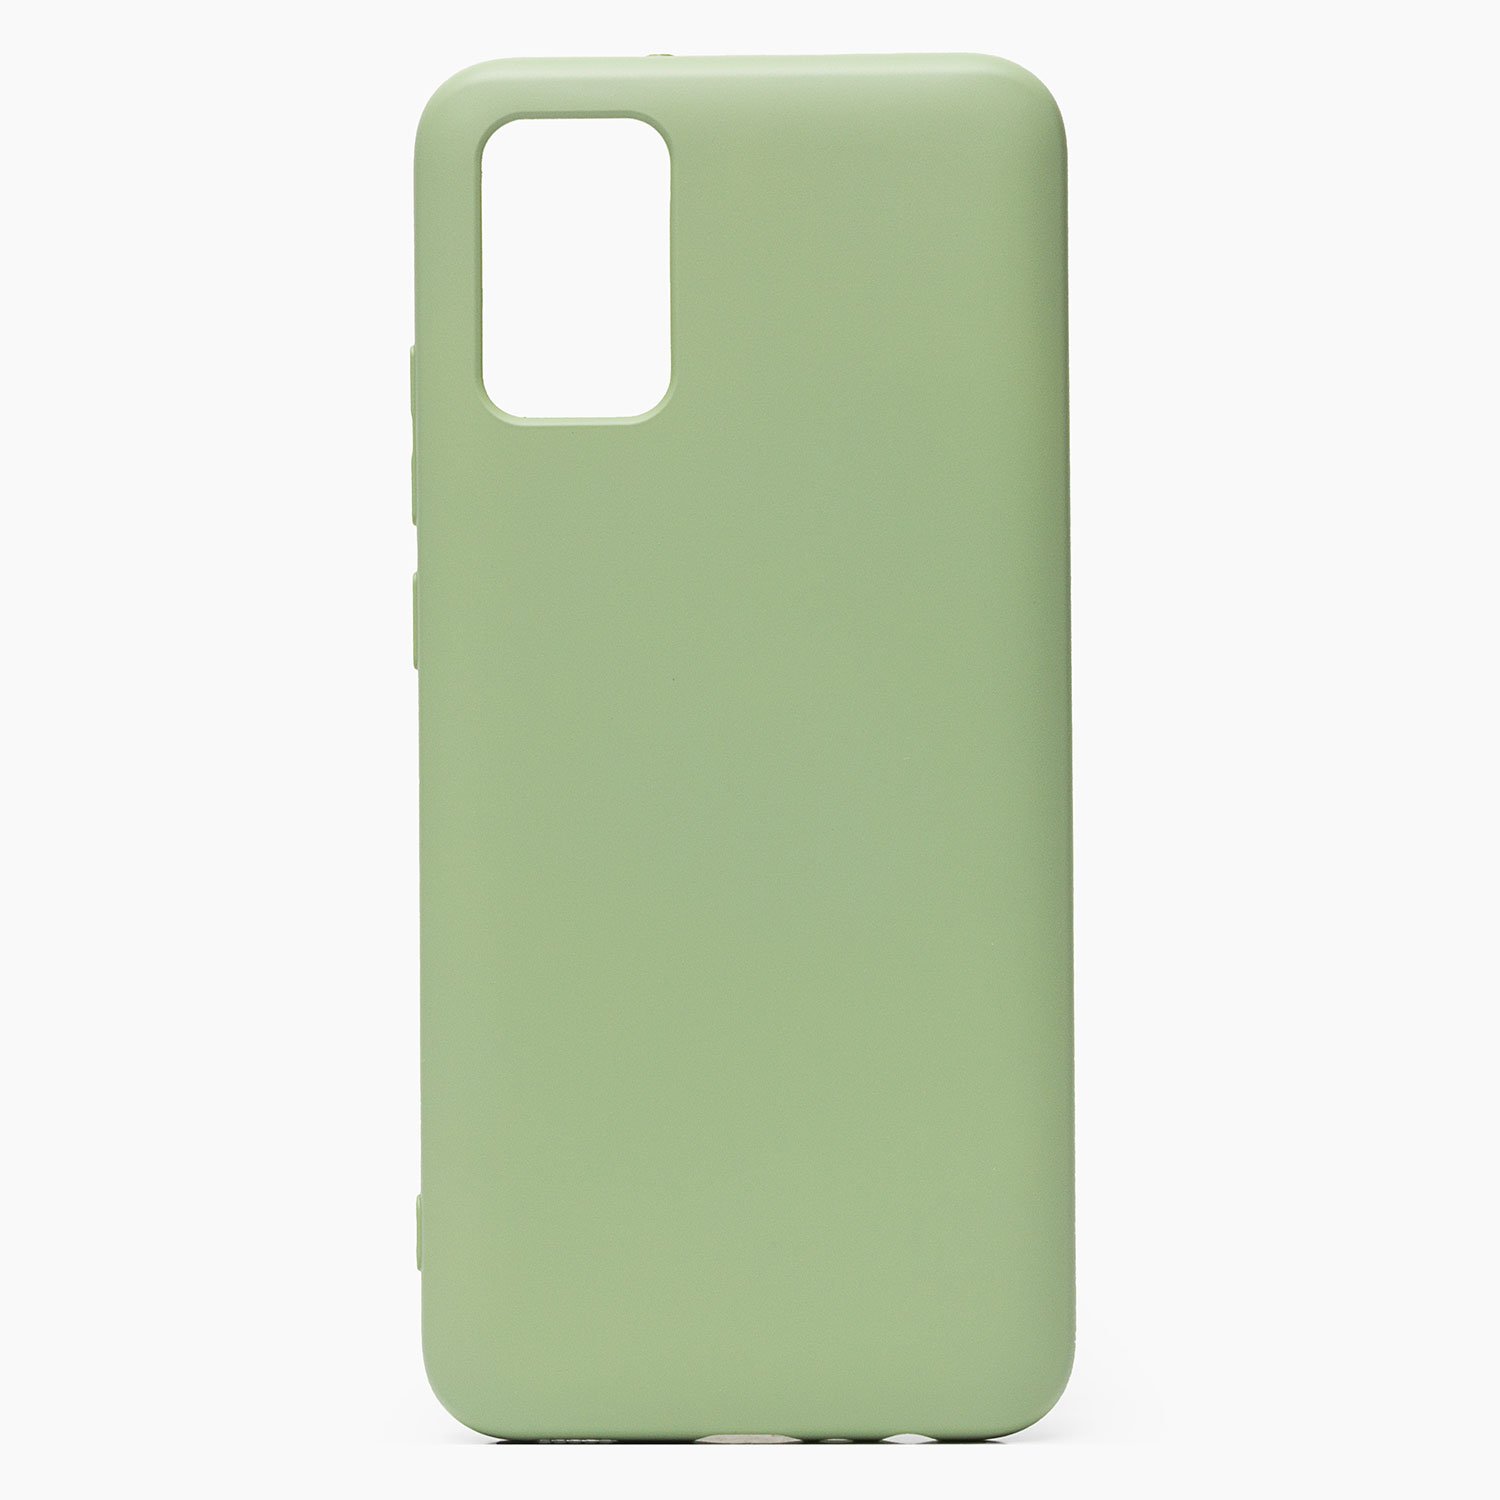 Чехол-накладка Activ Full Original Design для смартфона Samsung SM-A025 Galaxy A02s, силикон, светло-зеленый